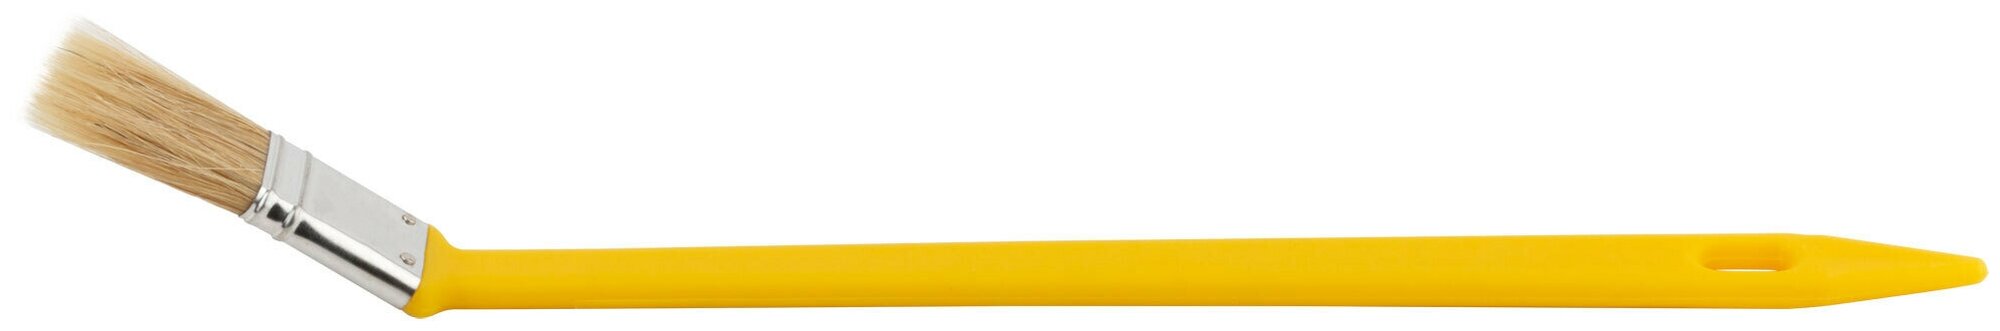 Кисть радиаторная, натуральная светлая щетина, желтая пластиковая ручка 1" (25 мм) 01218